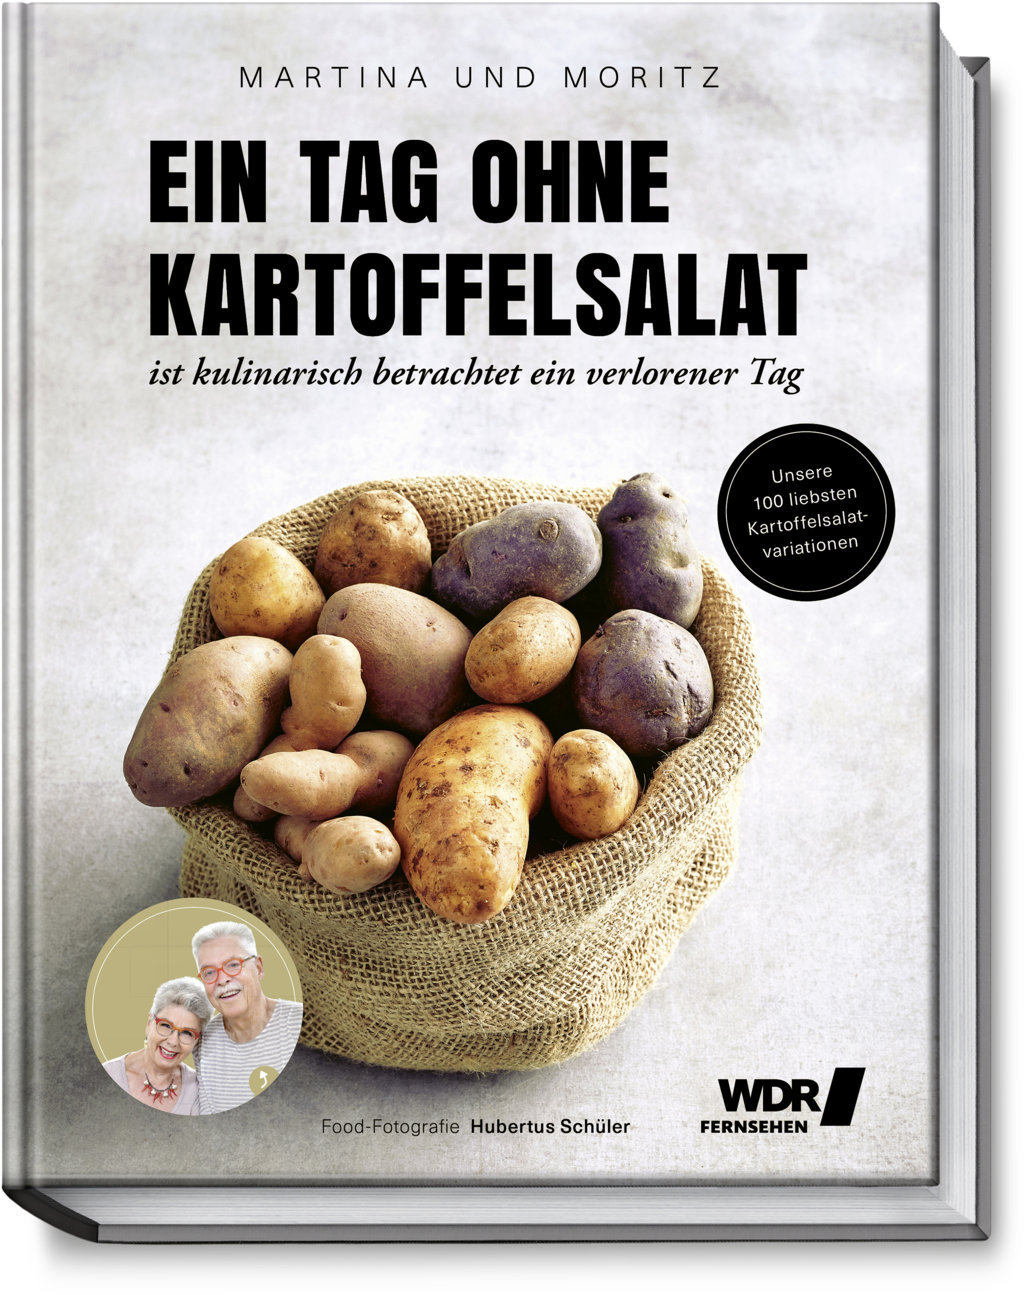 Bratkartoffeln sülze martina mit moritz und WDR Fernsehen_Kochen